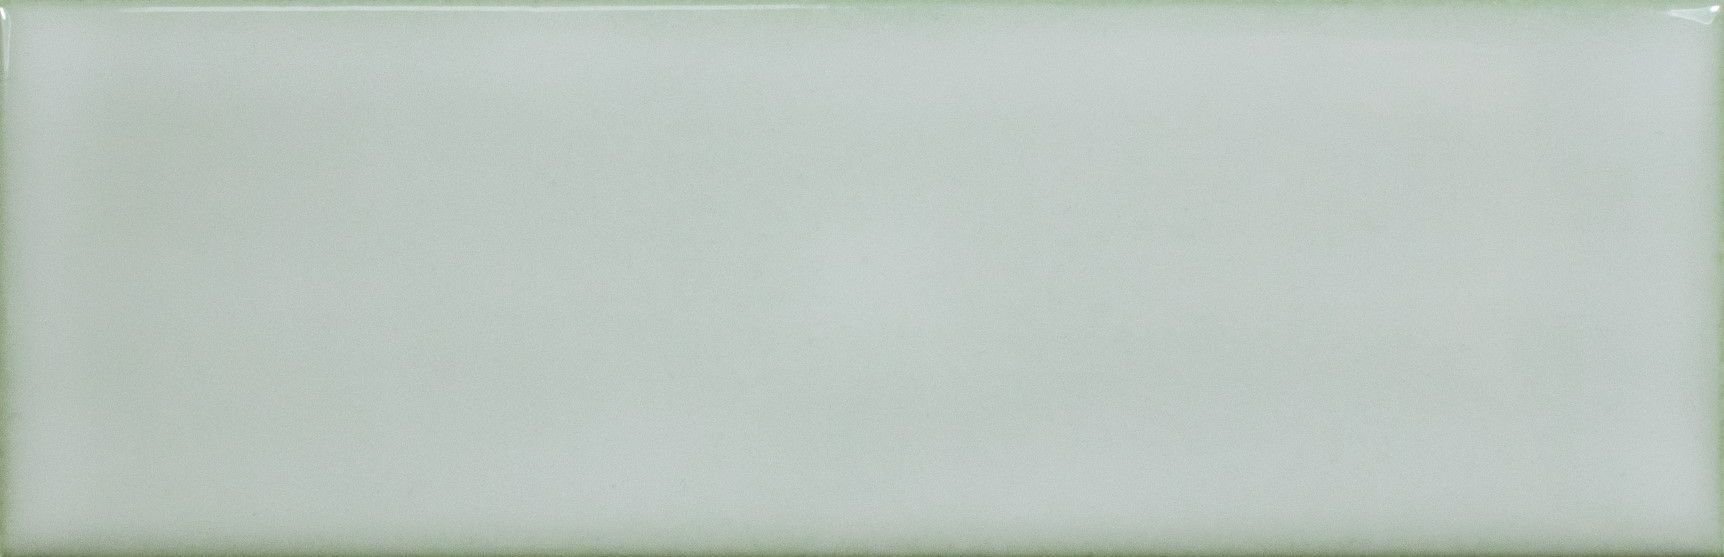 Керамическая плитка Керамин Wow Alchemist 124115 Sage Зеленая Глазурованная Настенная плитка 5,2х16